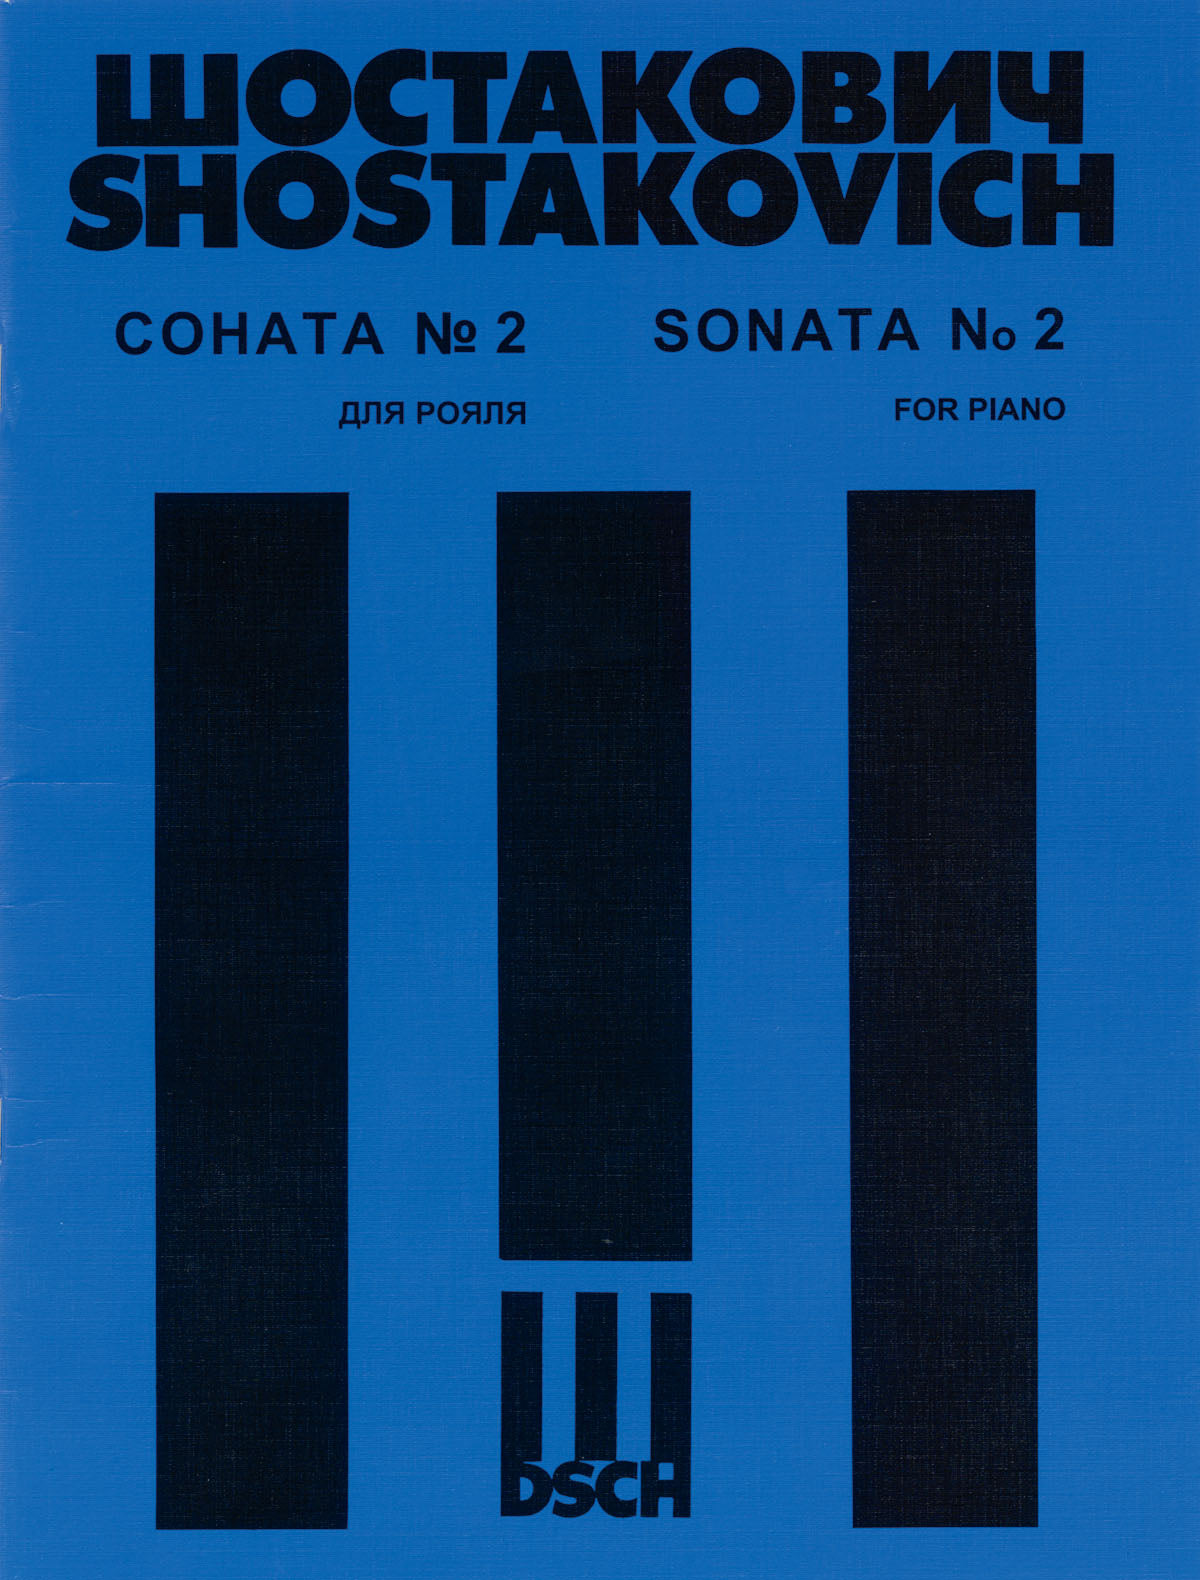 Shostakovich: Piano Sonata No. 2, Op. 61